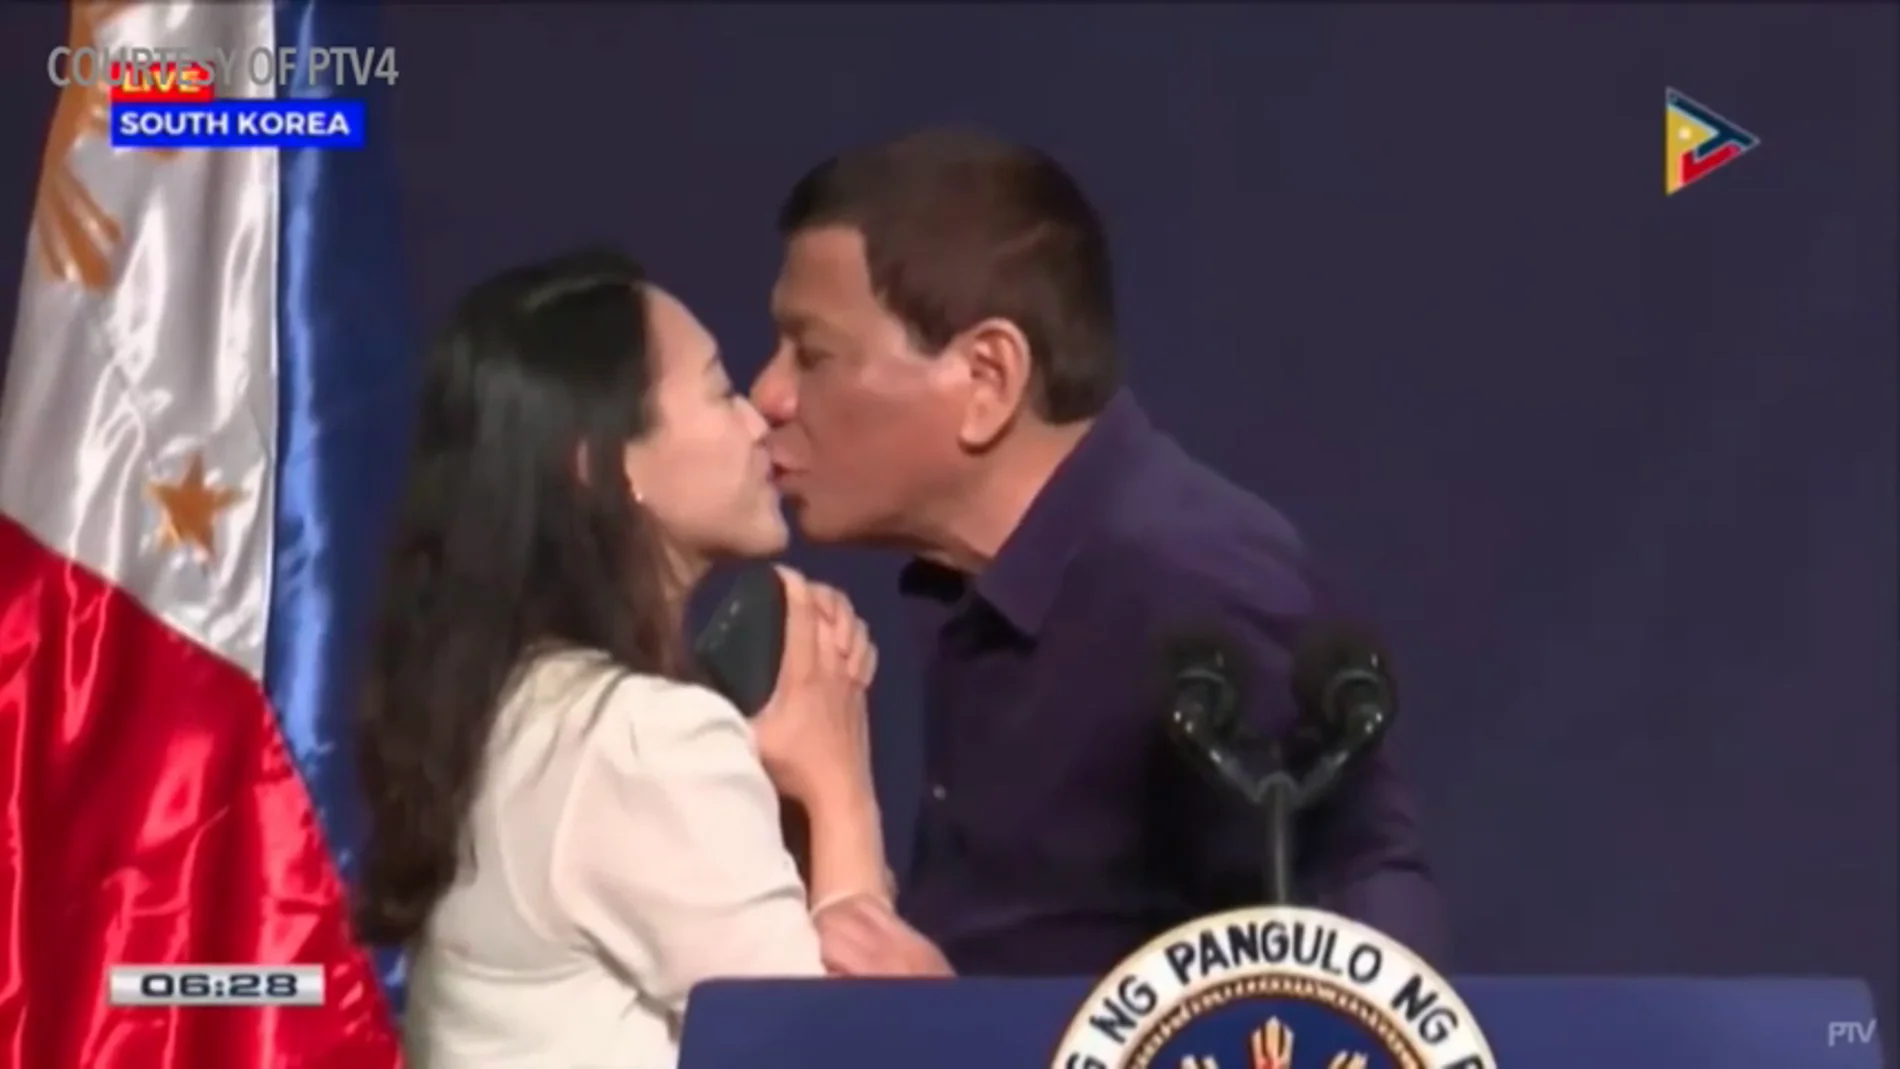 <p>El beso forzado de Duterte a una mujer desata las críticas</p>